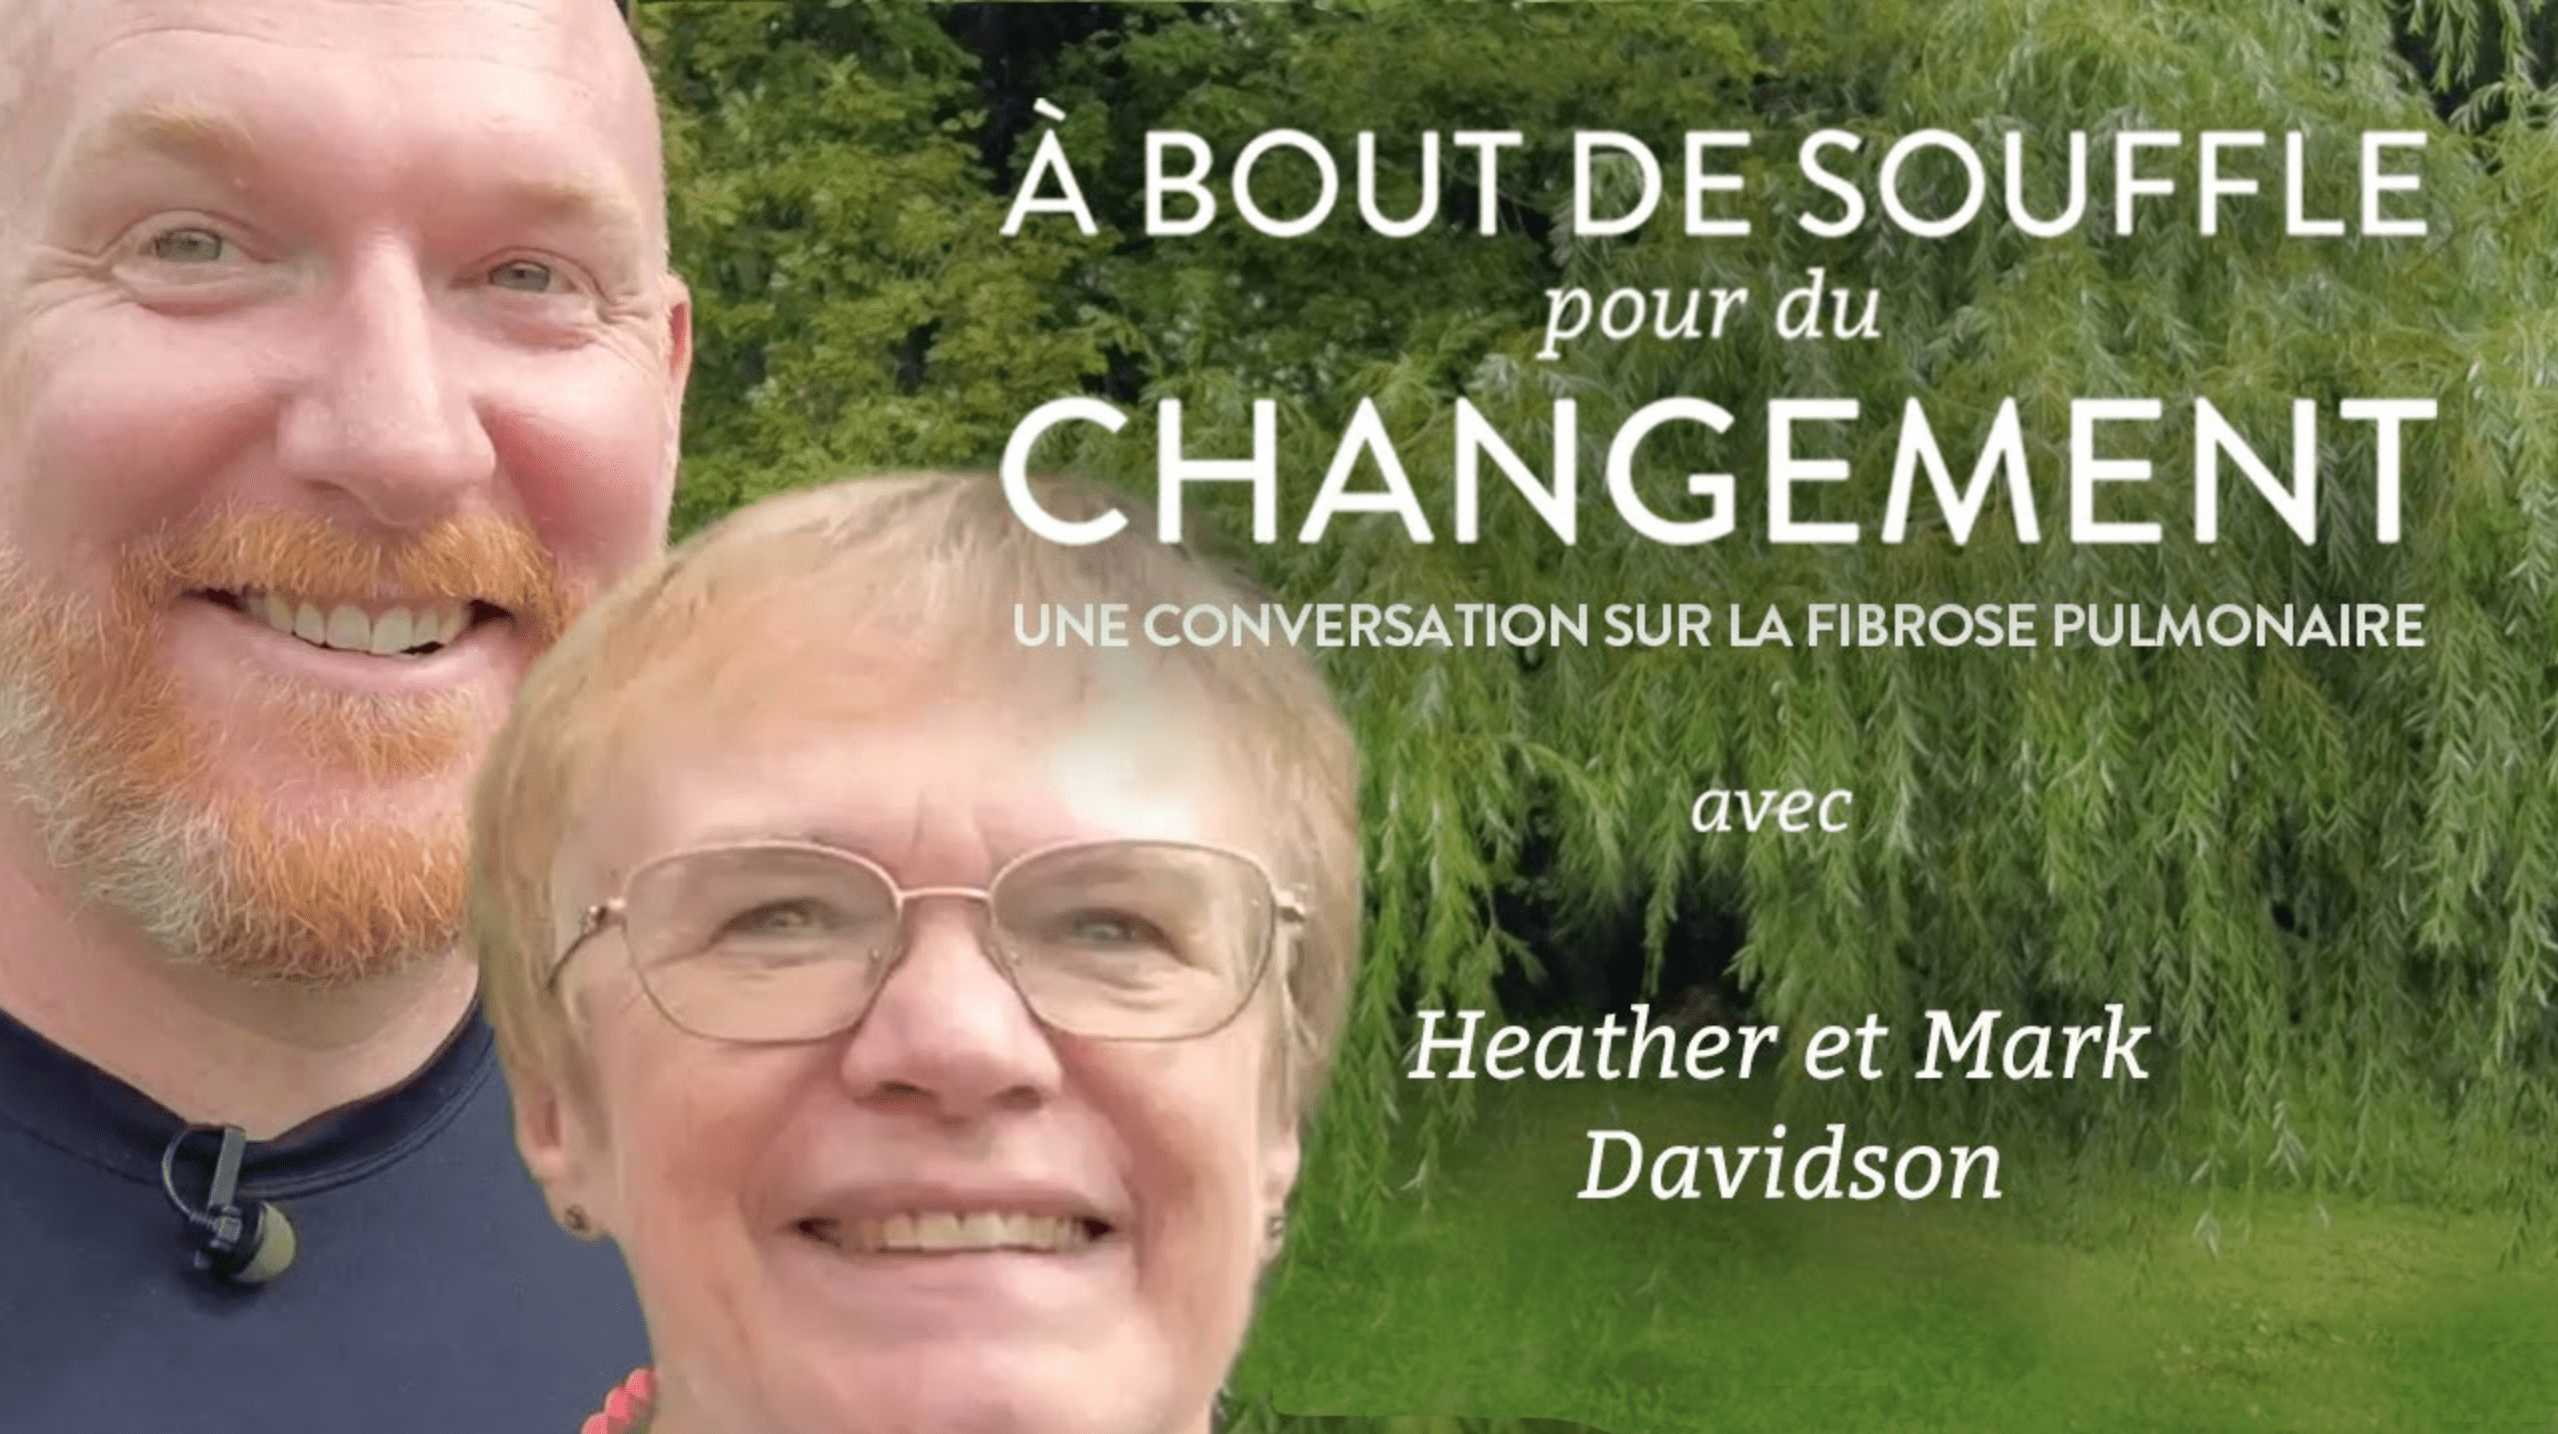 Man and woman with text: "À BOUT DE SOUFFLE pour du CHANGEMENT: UNE CONVERSATION SUR LA FIBROSE PULMONAIR avec Heather et Mark Davidson"